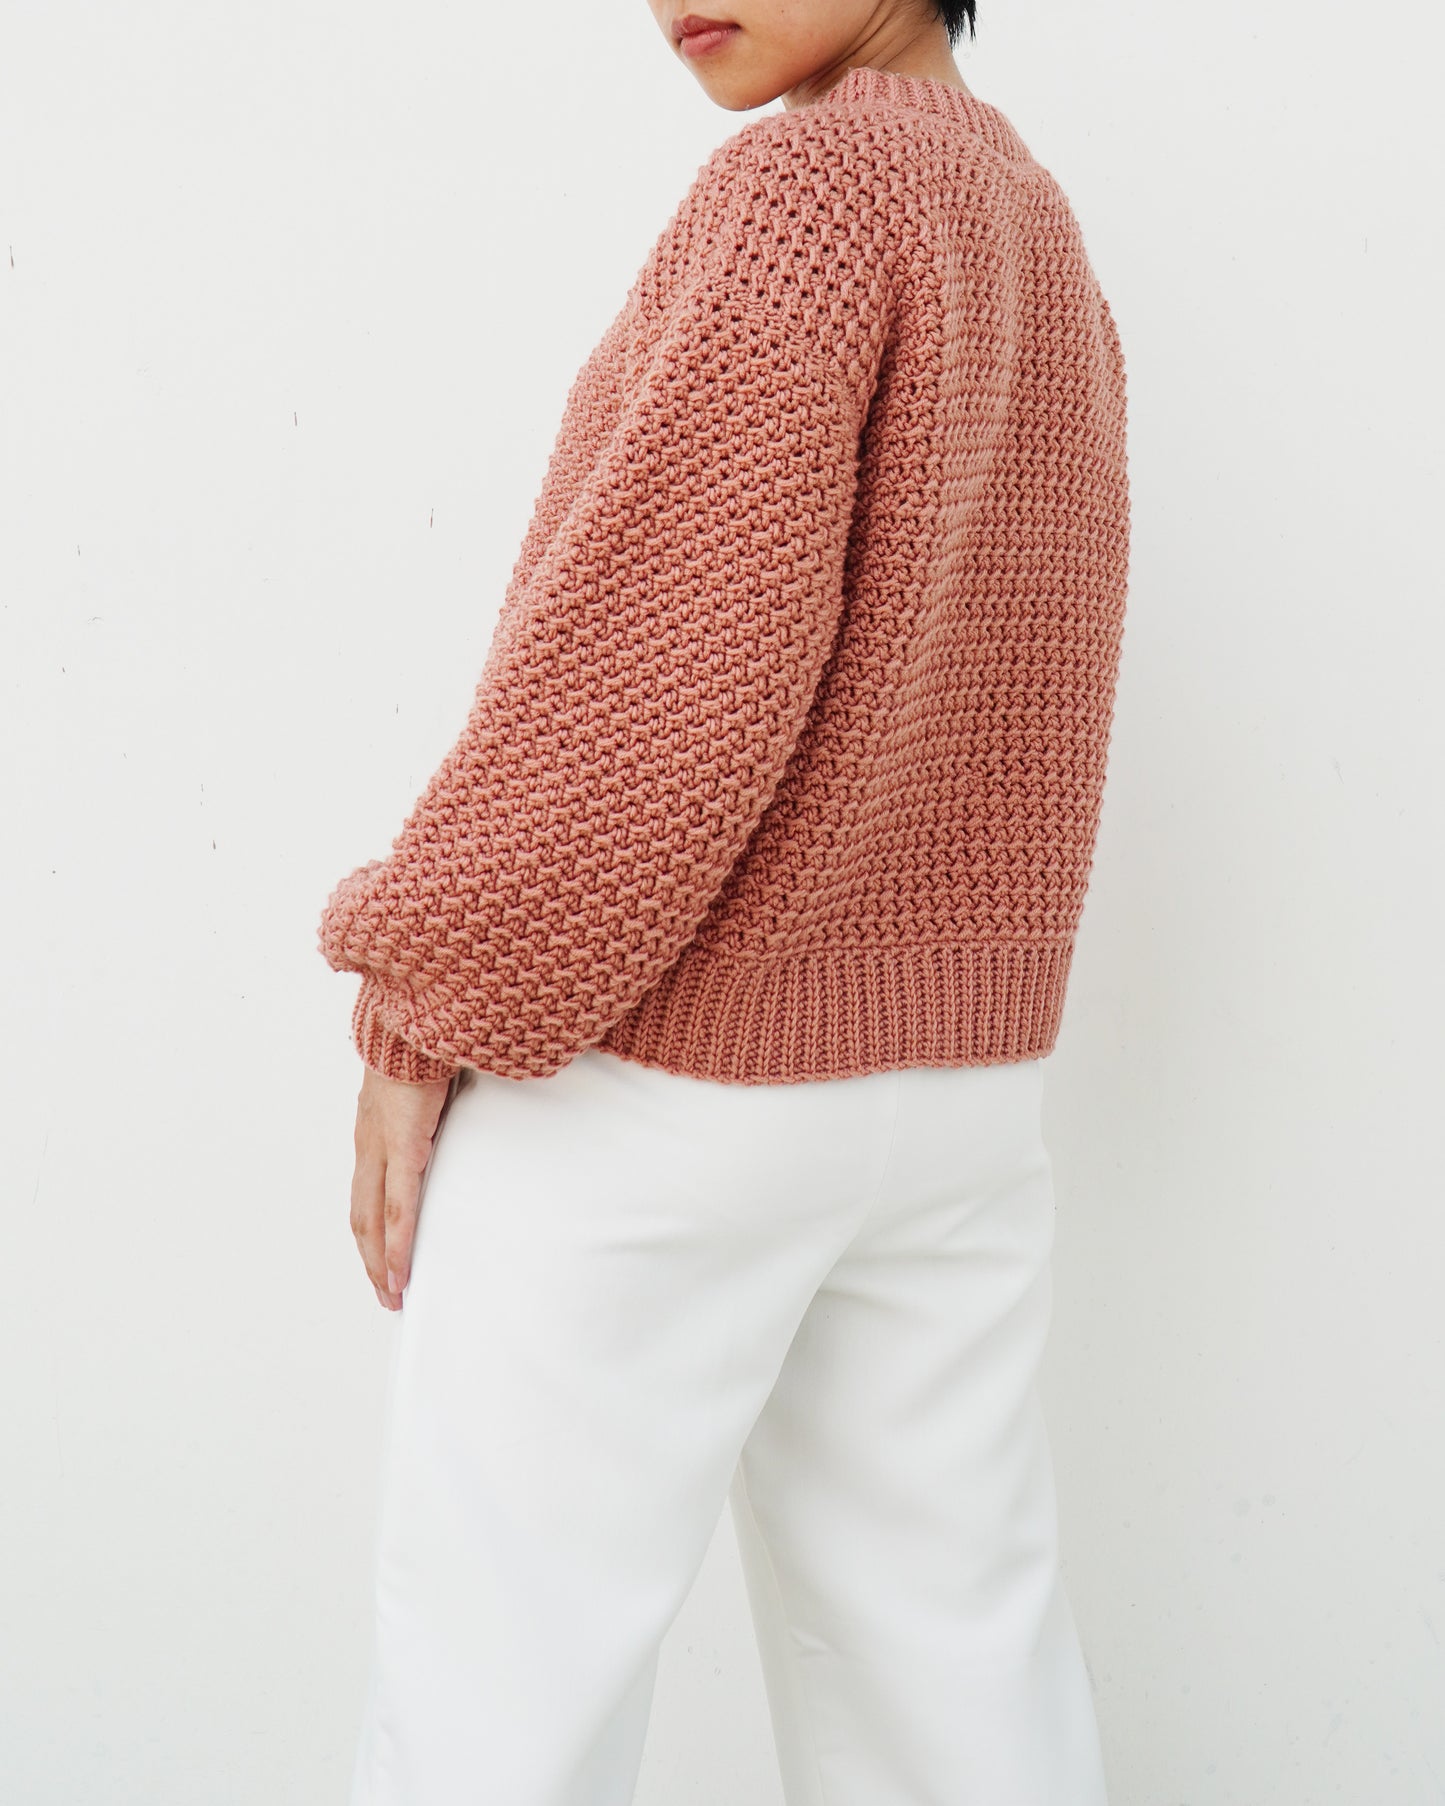 Sweater No.31 | Easy crochet sweater pattern